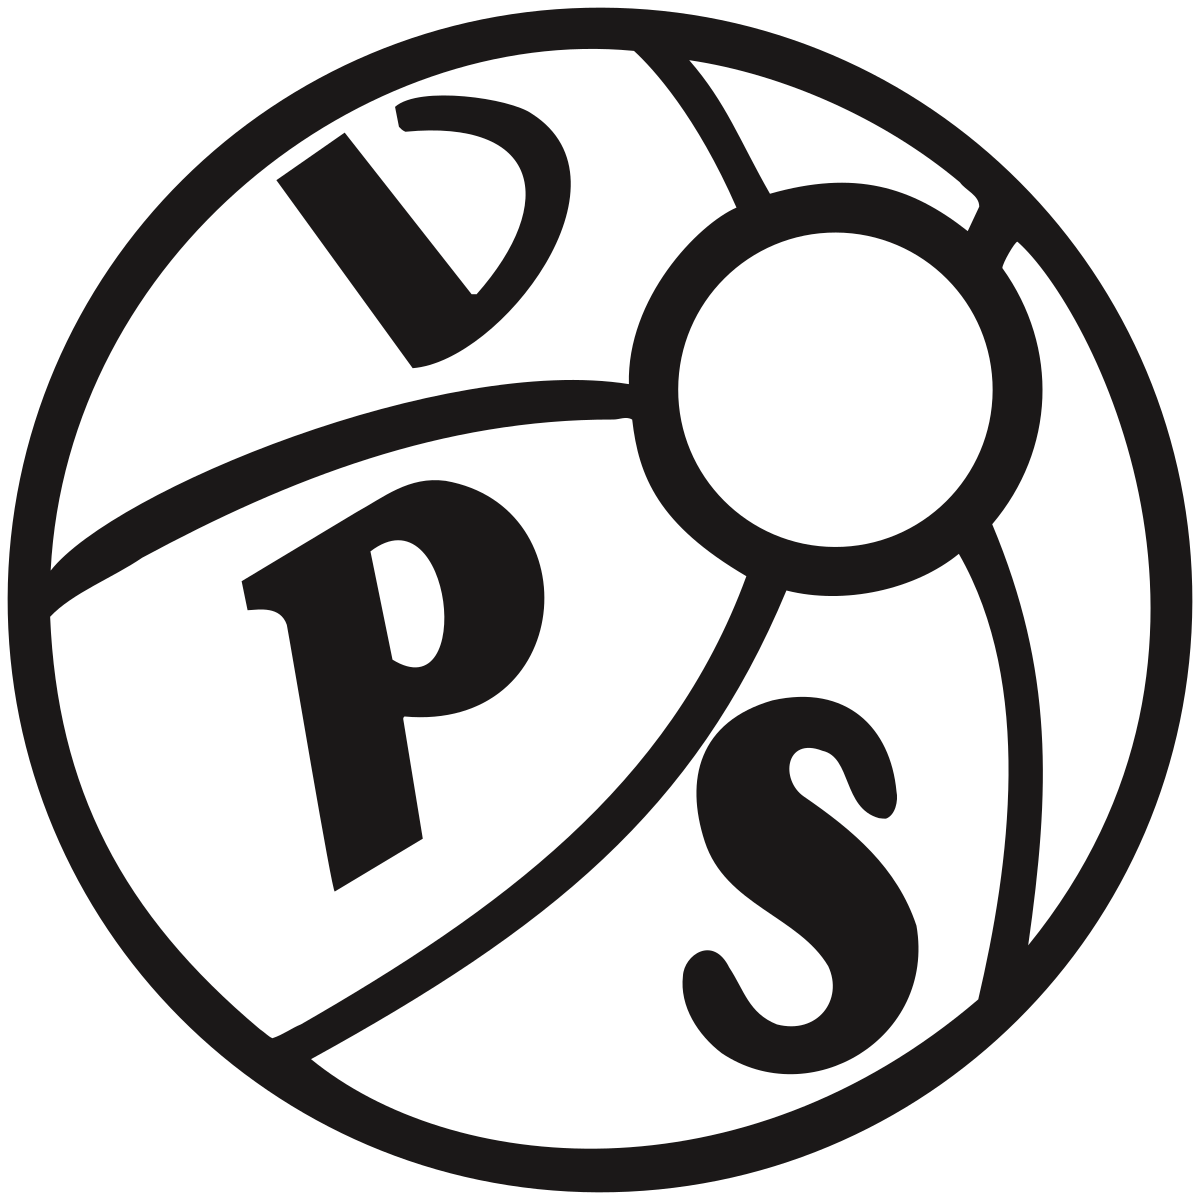 VPS乔尼欧伊特 logo